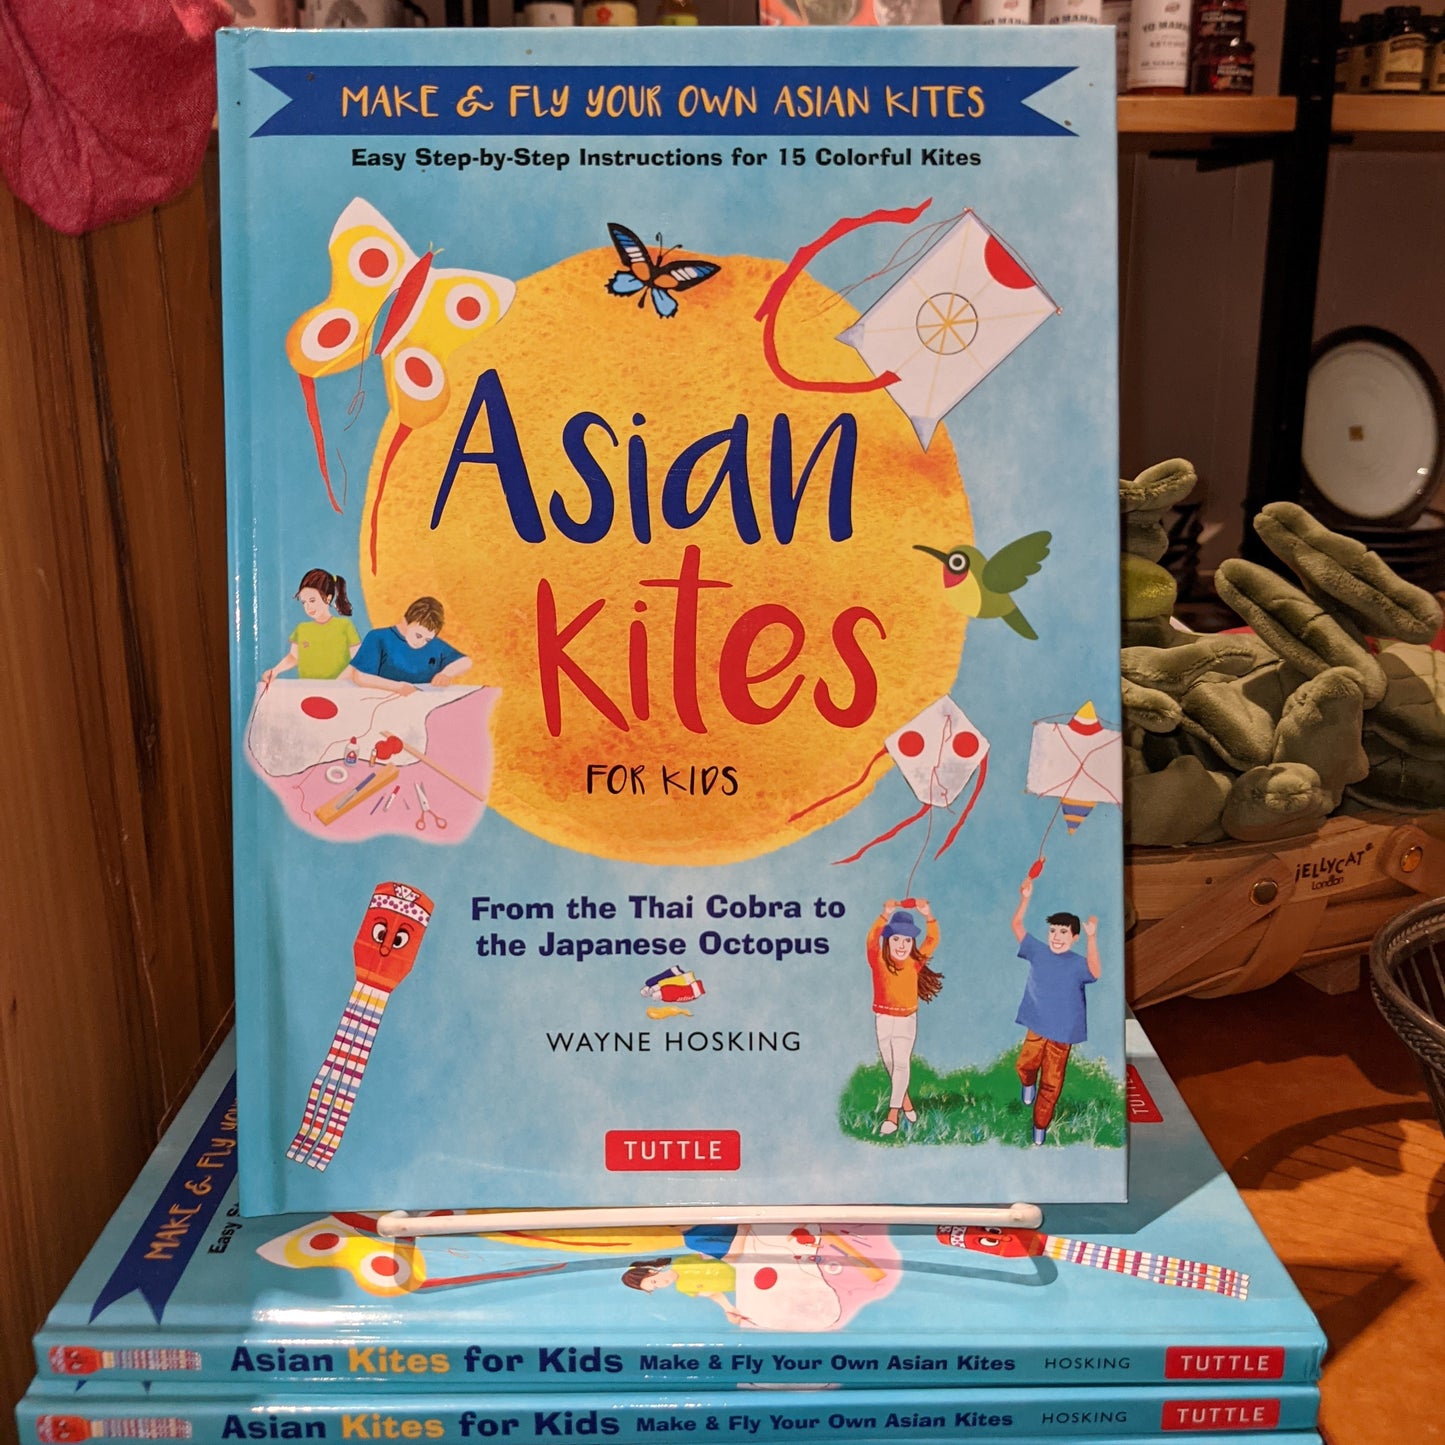 Asian Kites for Kids